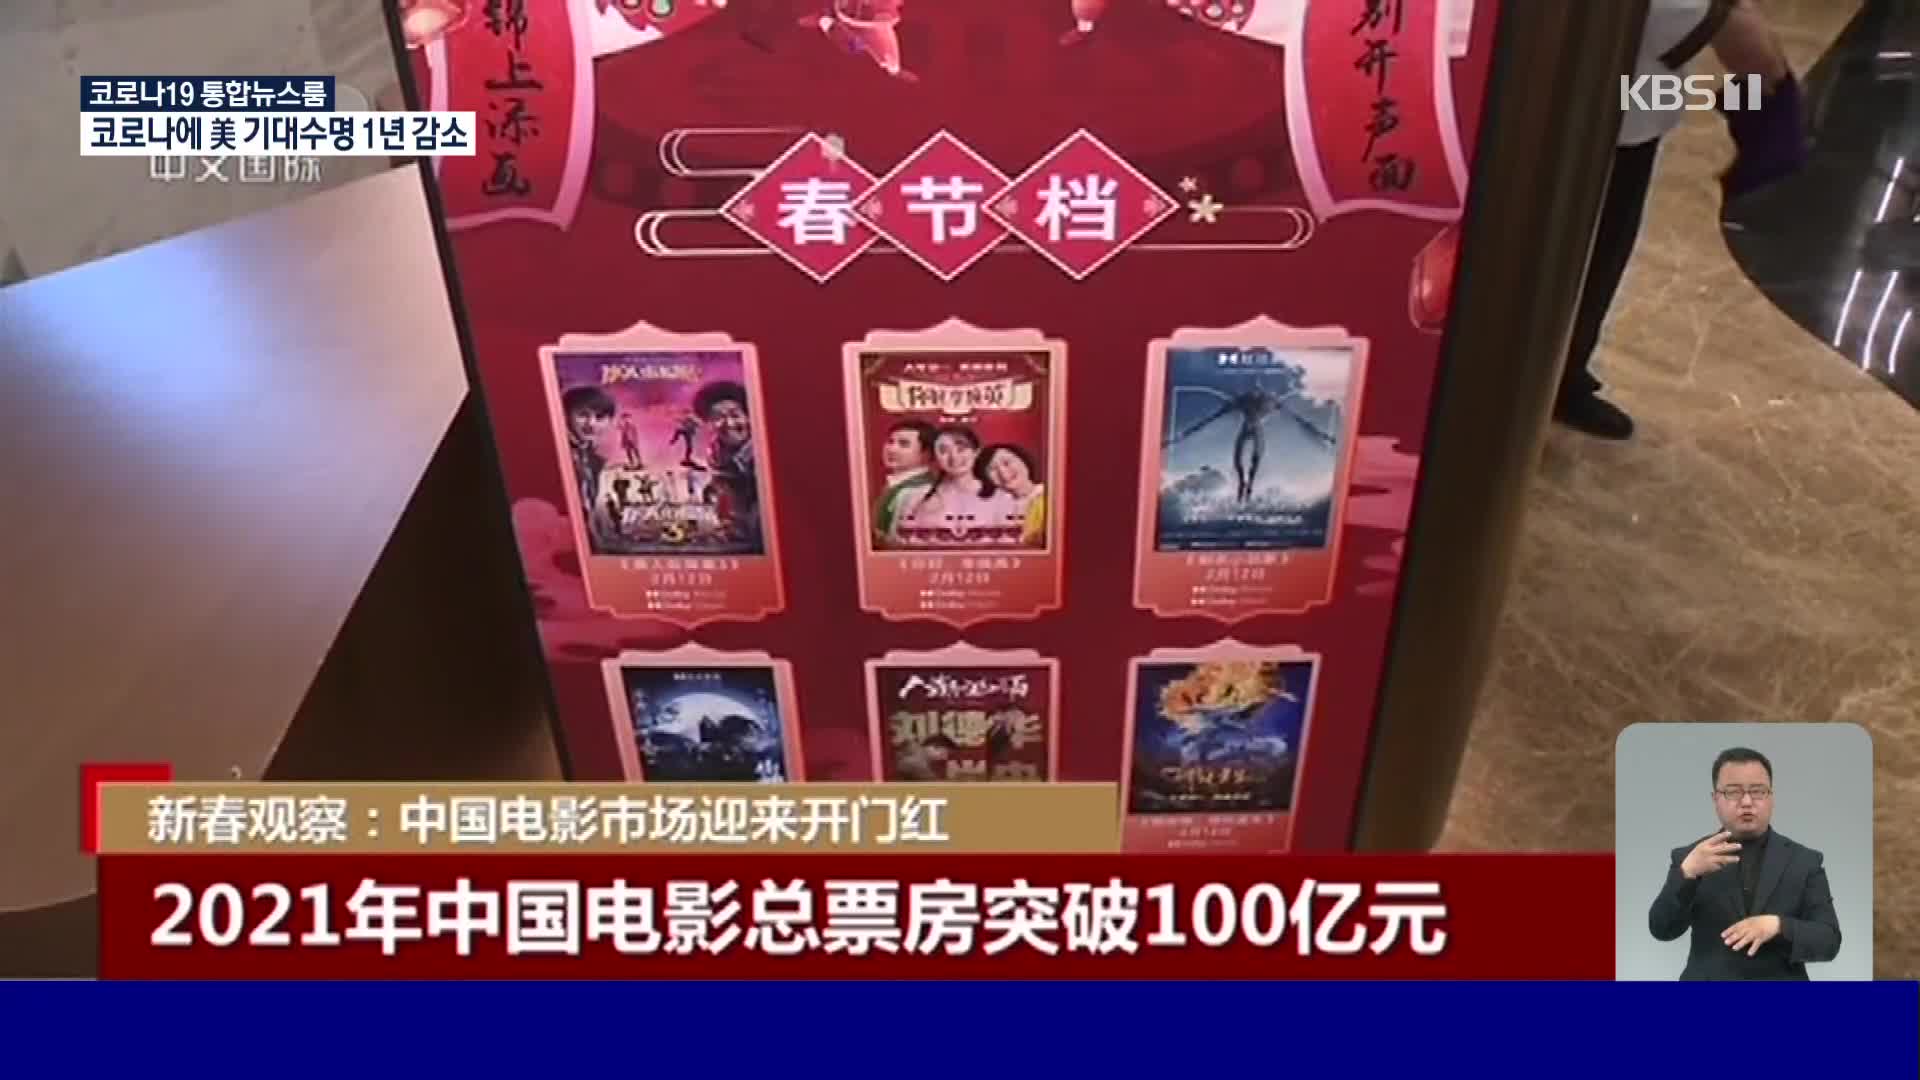 중국 영화 올해 박스오피스 수입 1조 7천억 원 돌파